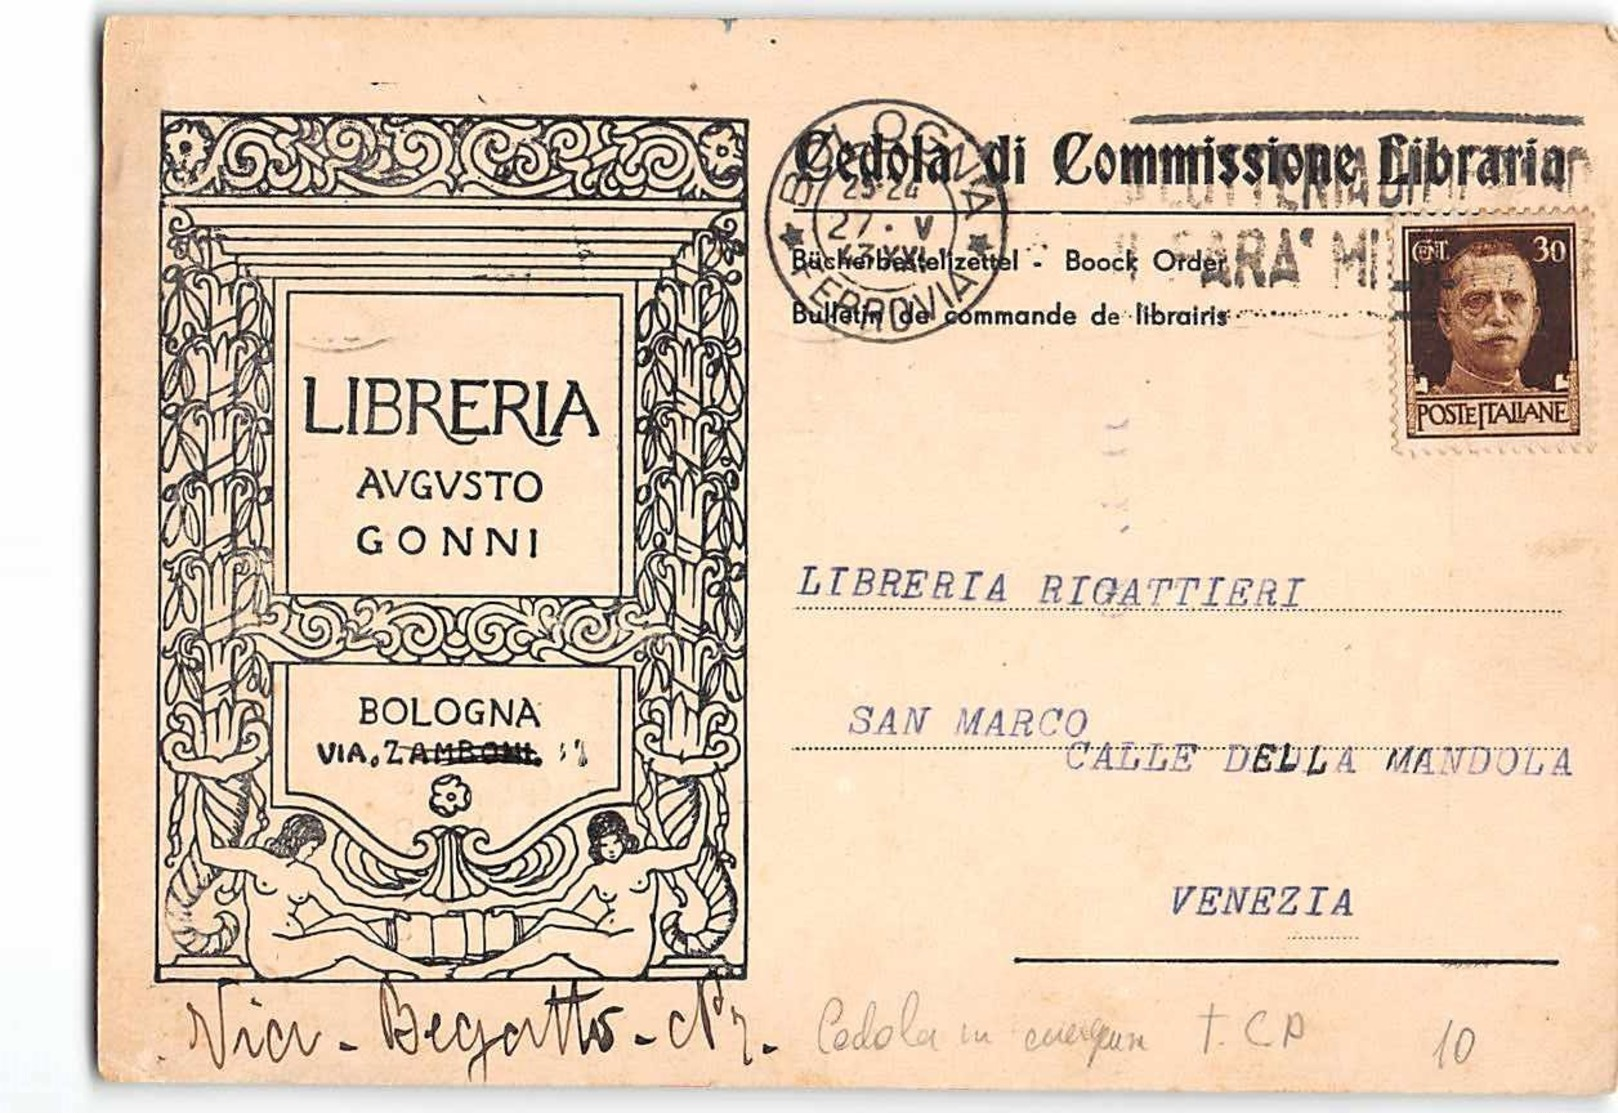 15748 01 CEDOLA COMMISSIONE LIBRARIA LIBRERIA AUGUSTO GONNI BOLOGNA X VENEZIA - Ganzsachen